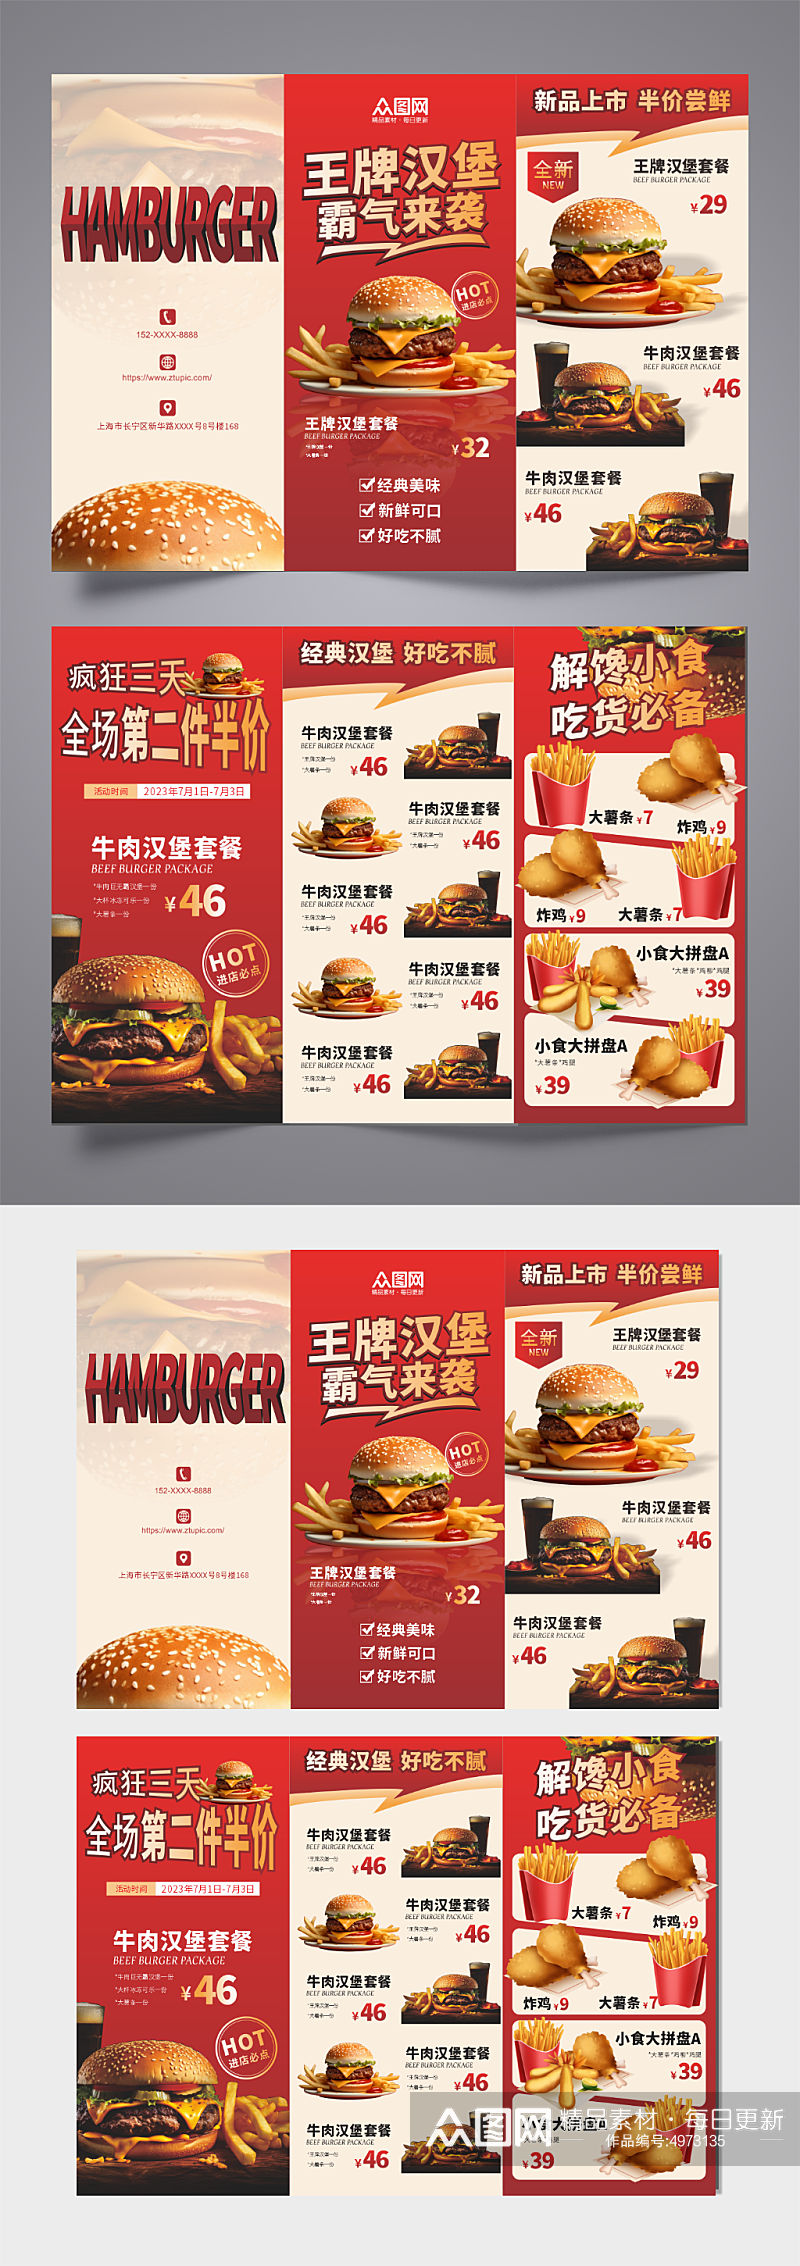 红色高端大气快餐汉堡店美食三折页菜单素材